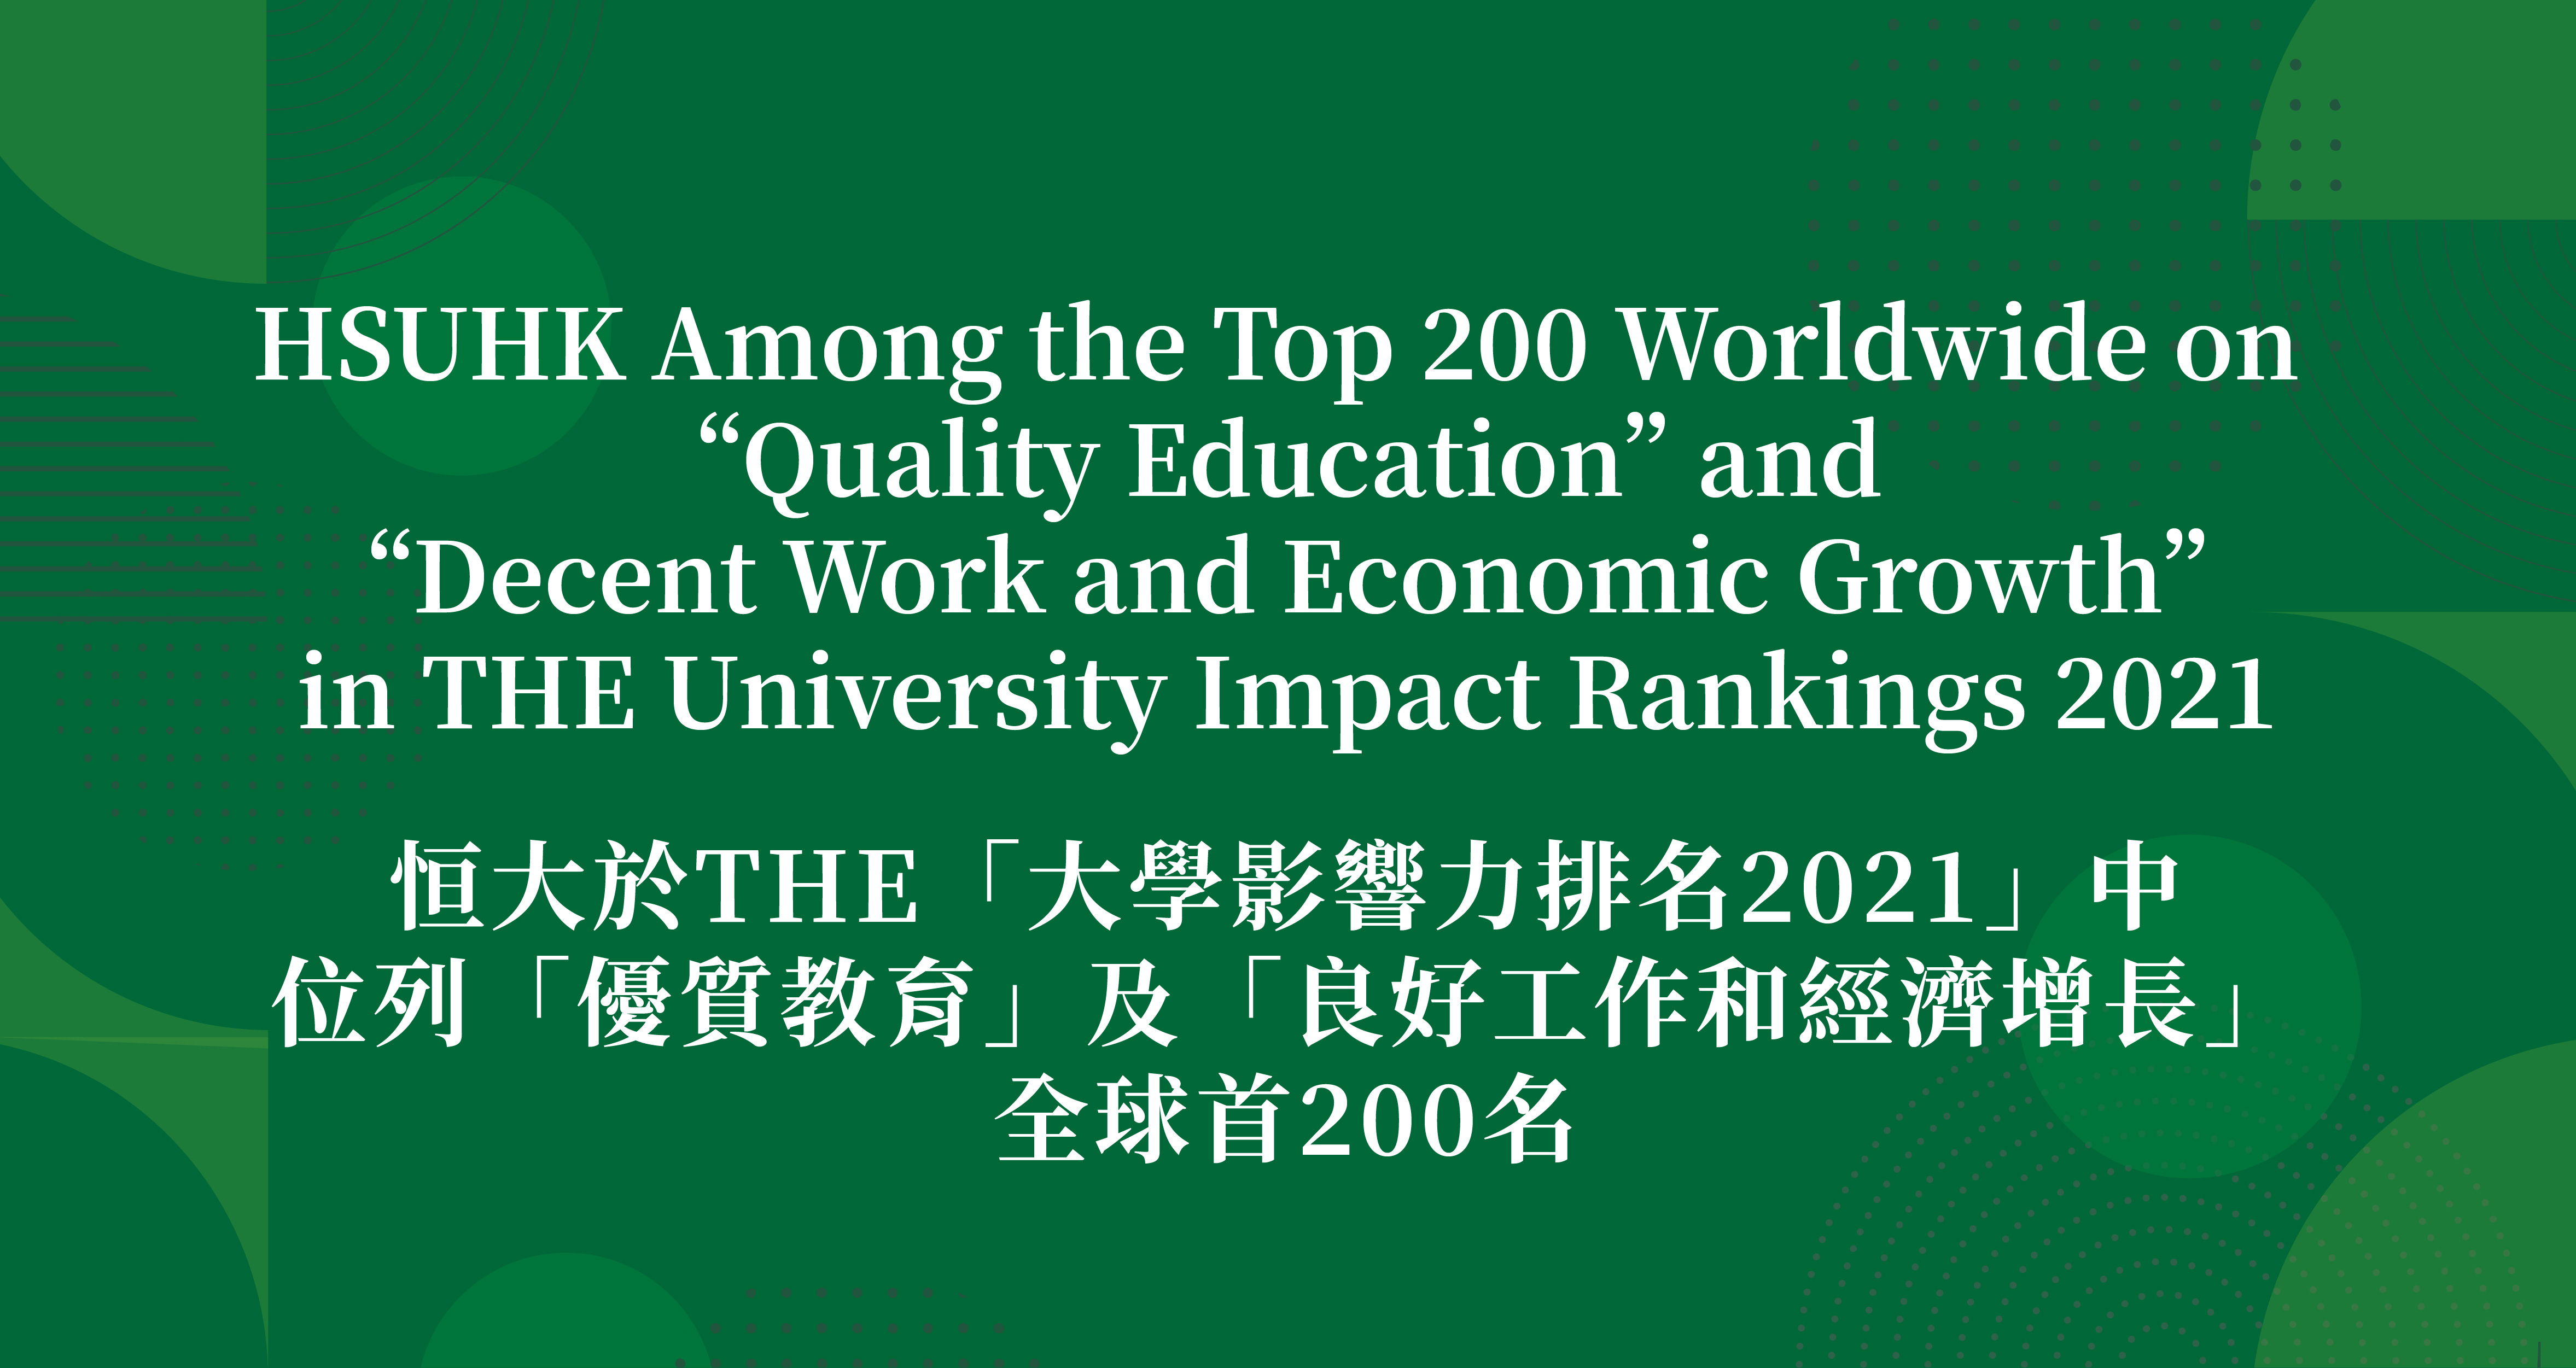 恒大於英國泰晤士高等教育（THE）「大學影響力排名2021」中位列「優質教育」及「良好工作和經濟增長」全球首200名